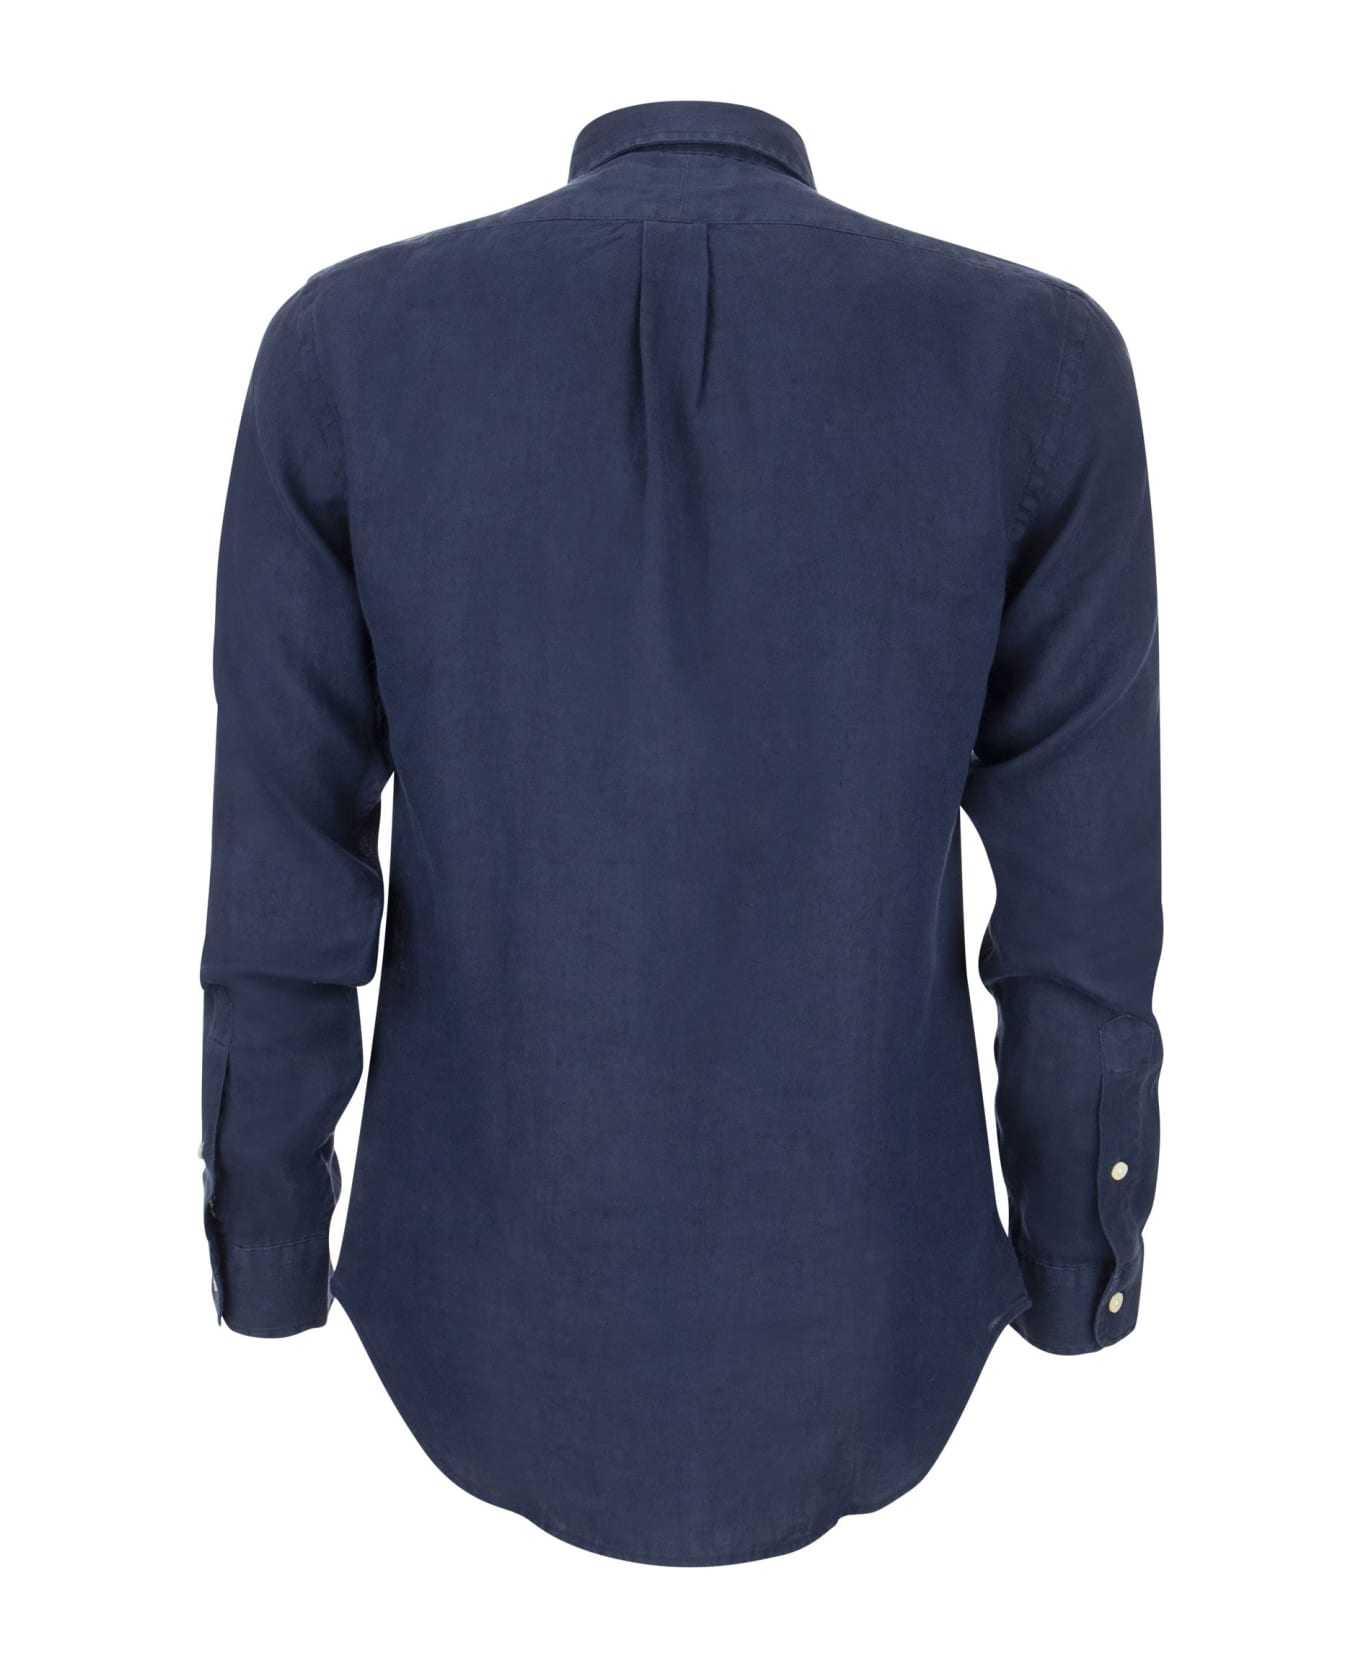 Polo Ralph Lauren Logo Embroidery Shirt - Navy Blue